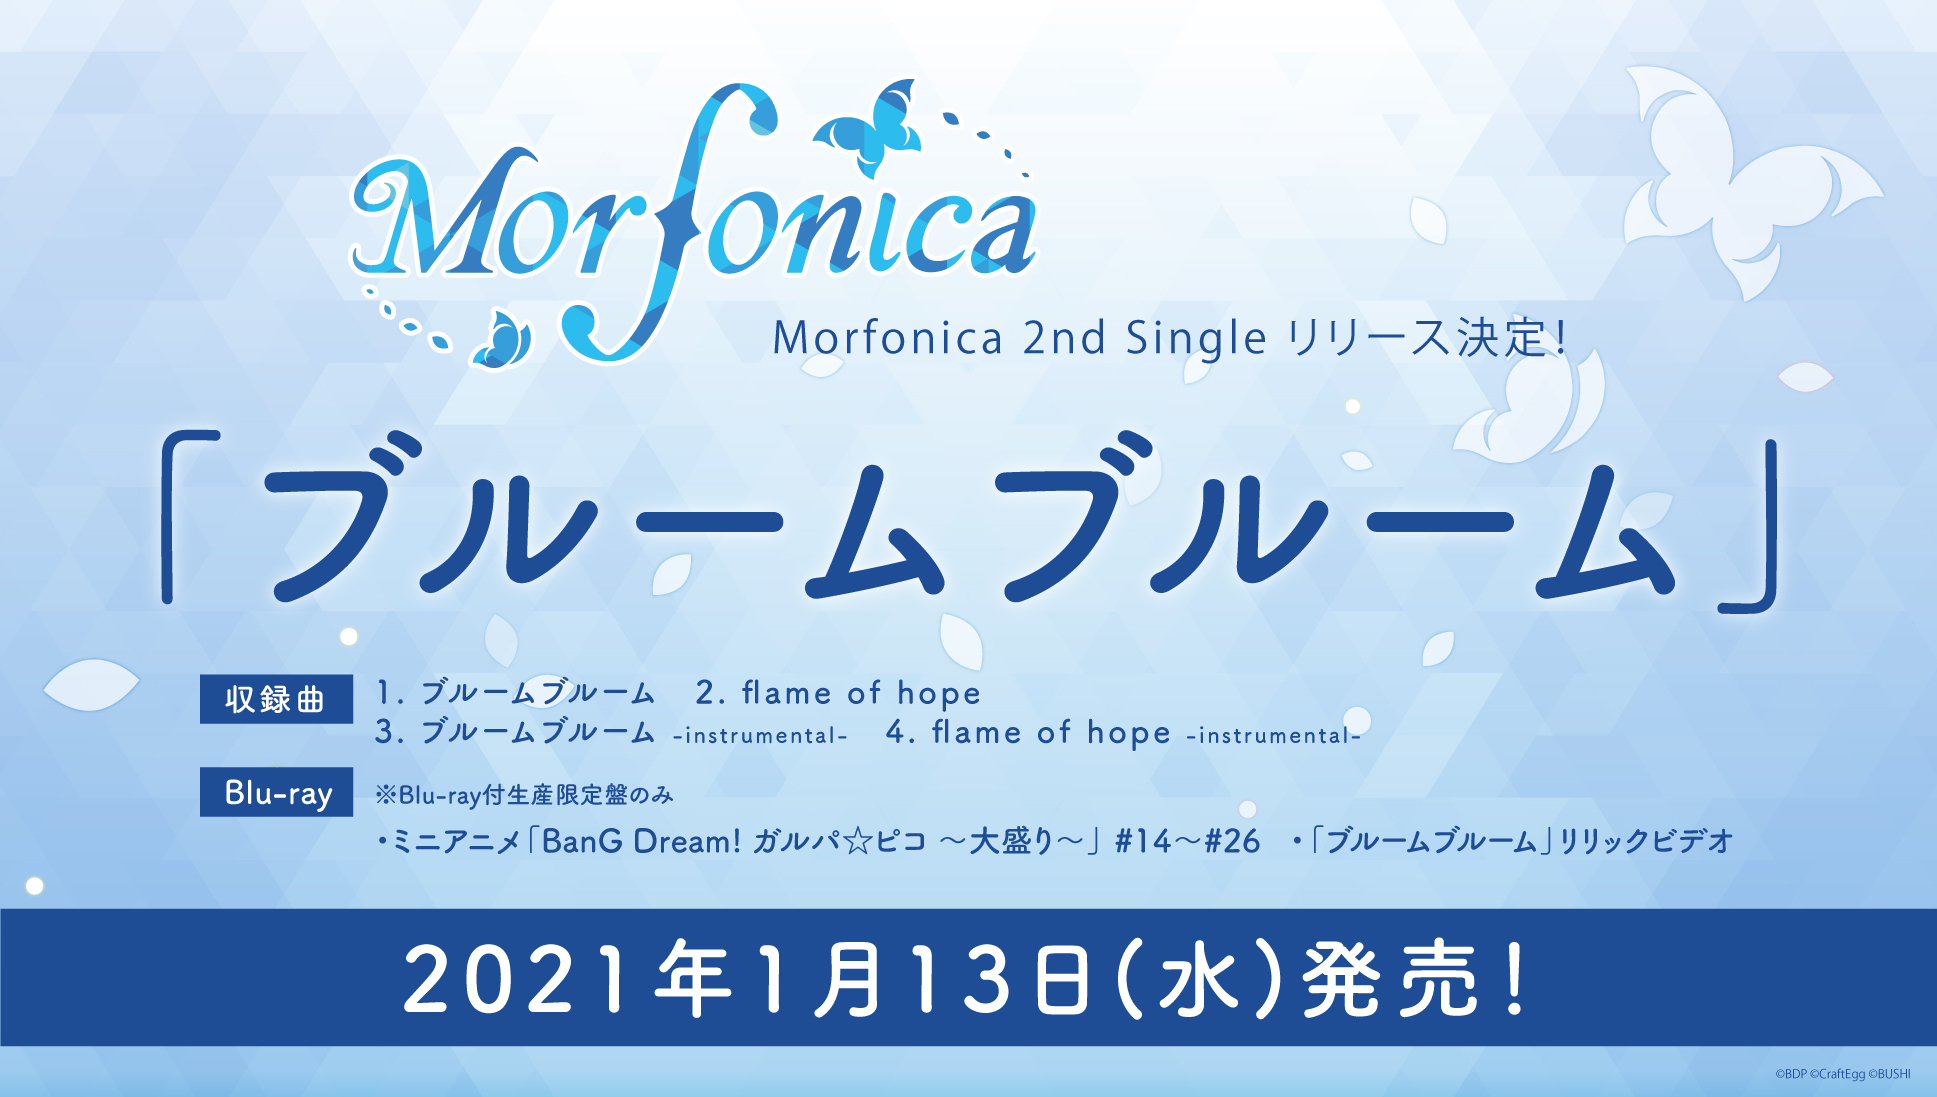 Morfonica 2ndシングル「ブルームブルーム」